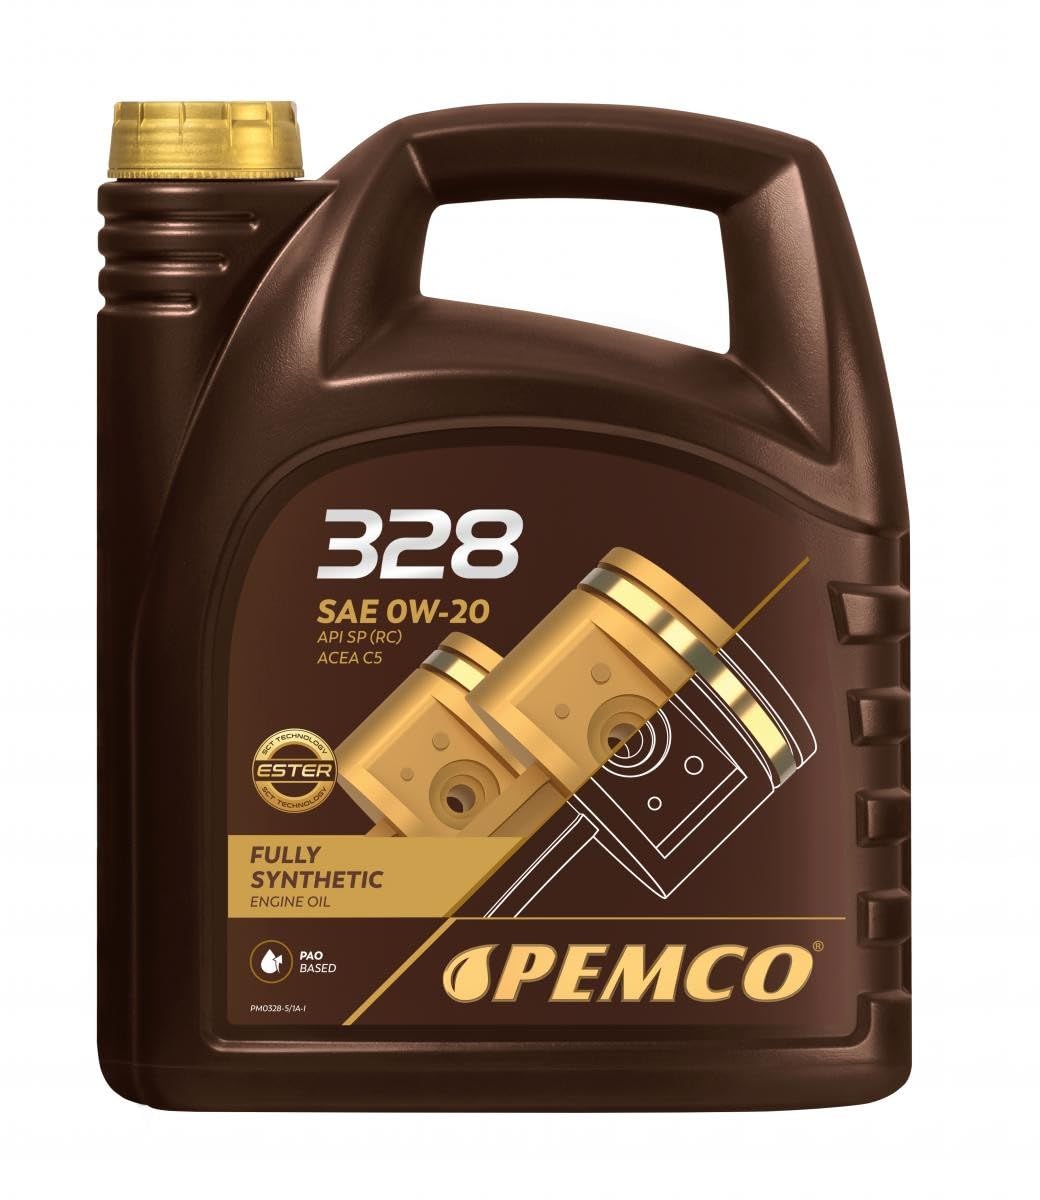 Pemco Motoröl 328 0W-20 Motorenöl Engine Oil Pm0328-5 5L von Pemco